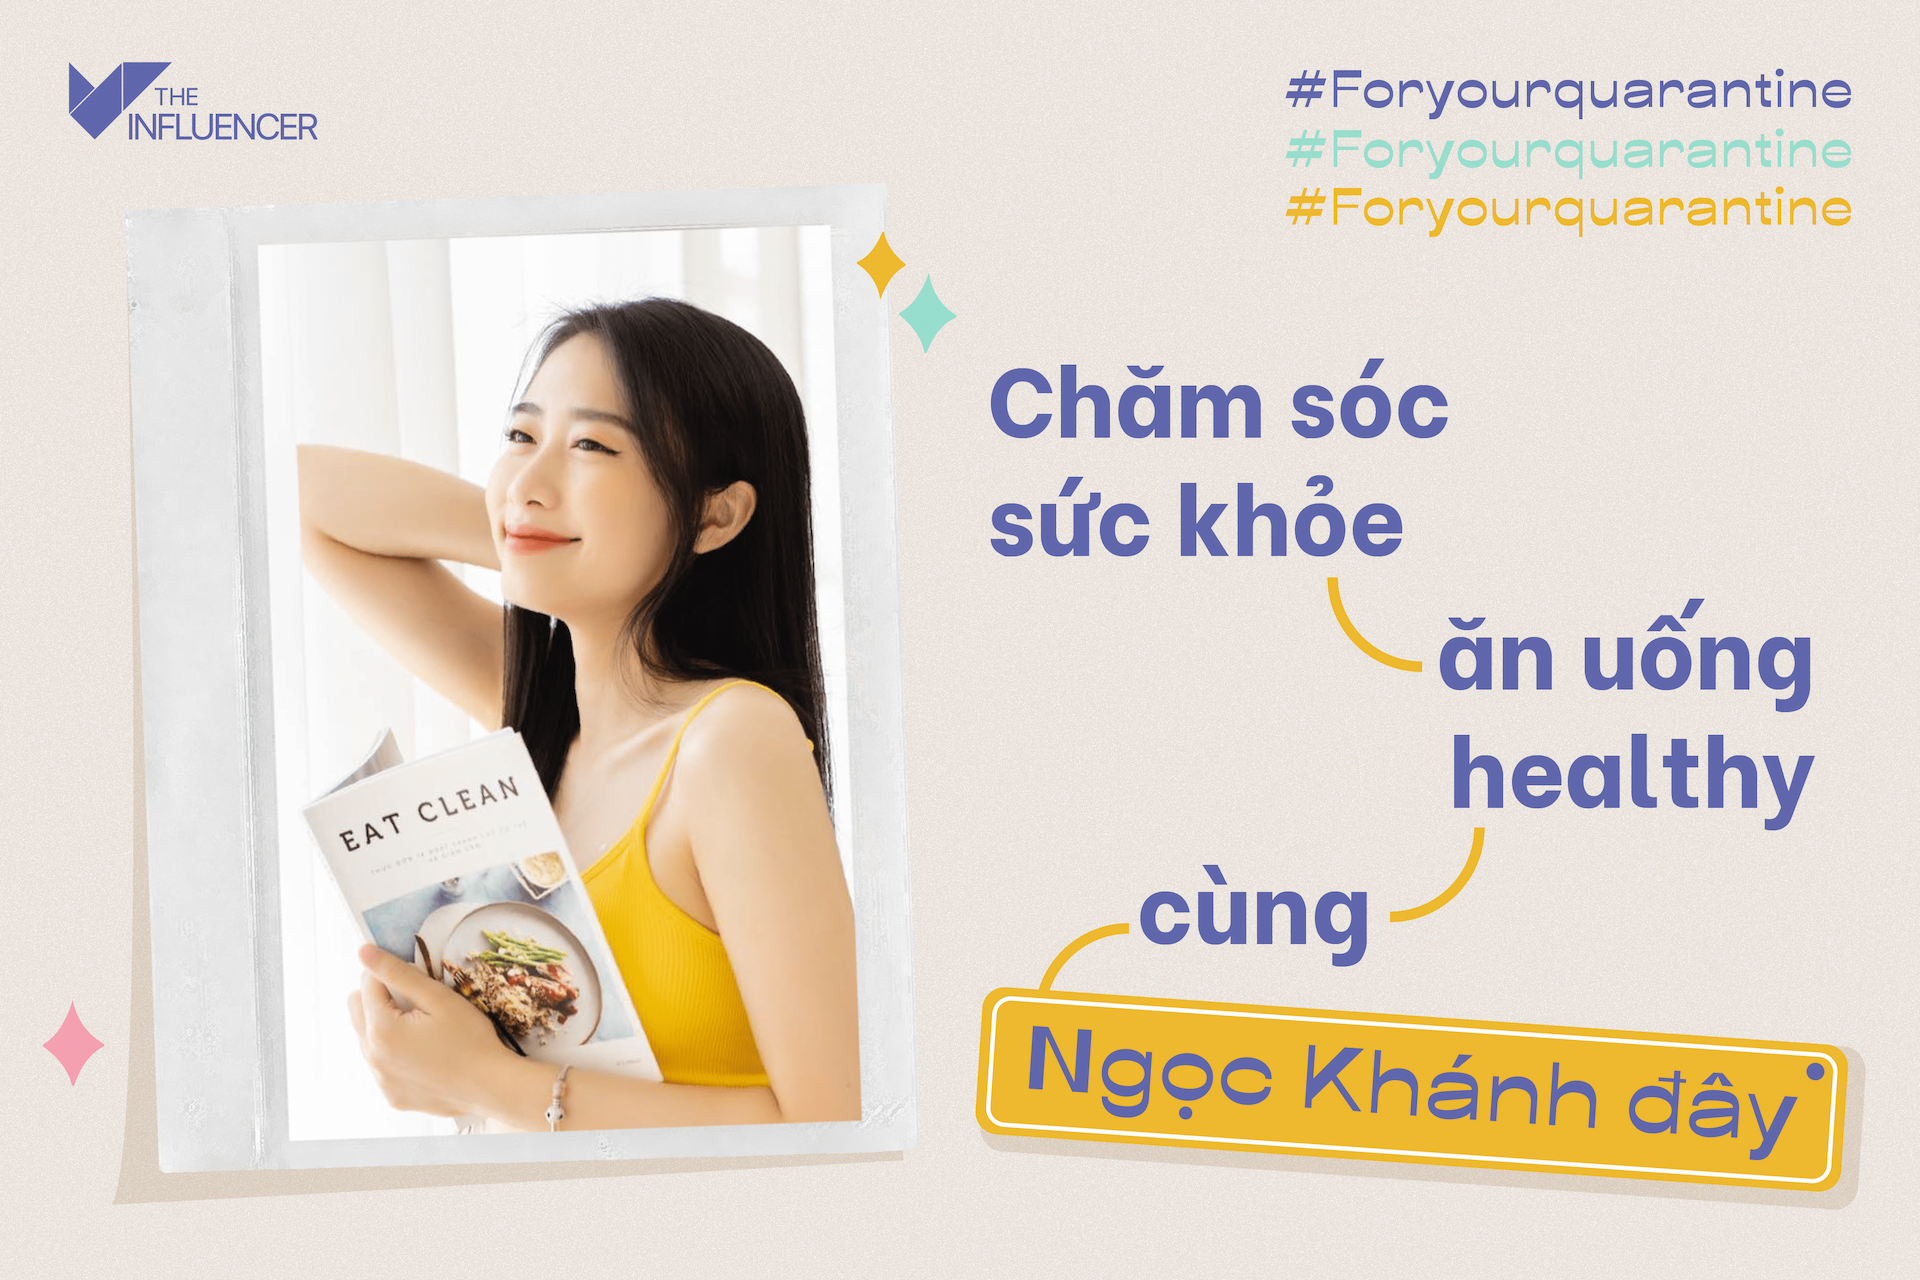 #Foryourquarantine: Chăm sóc sức khỏe - Ăn uống healthy cùng Ngọc Khánh đây